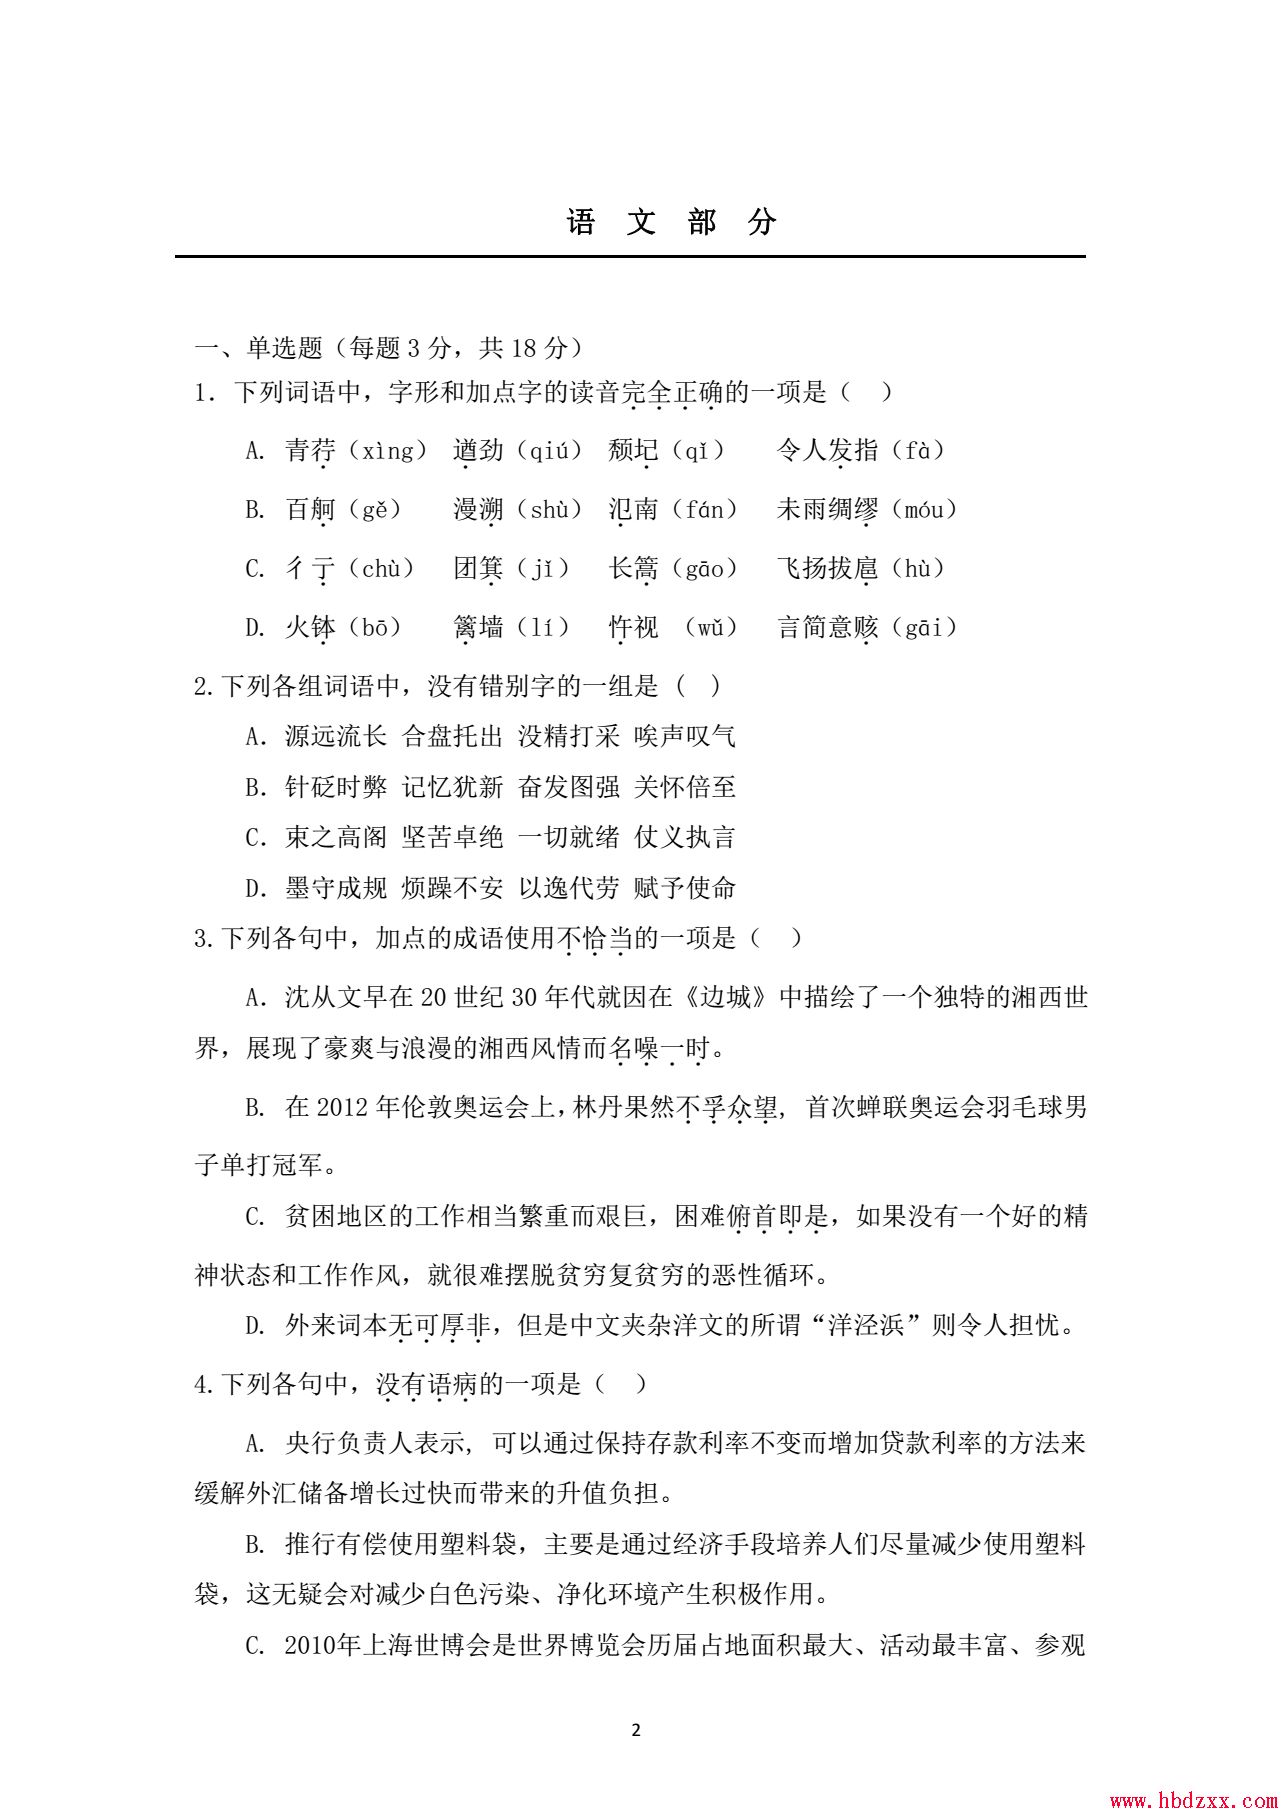 河北机电职业技术学院2012年单招语文试题 图1